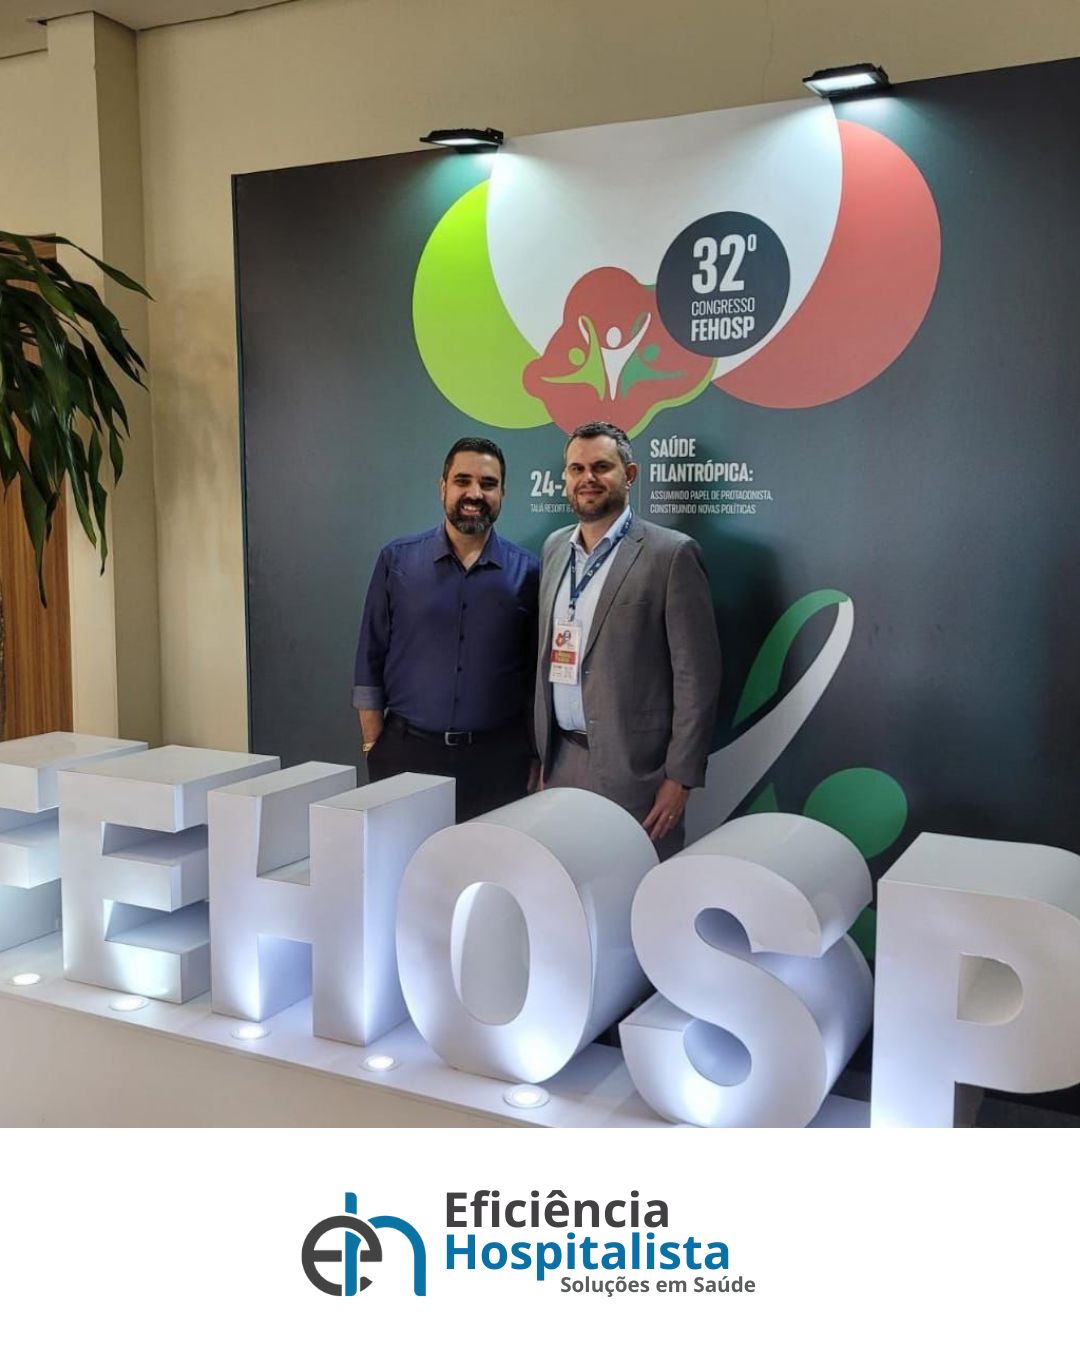 CEO da Eficiência Hospitalista apresenta soluções para a crise na saúde durante o Congresso FEHOSP